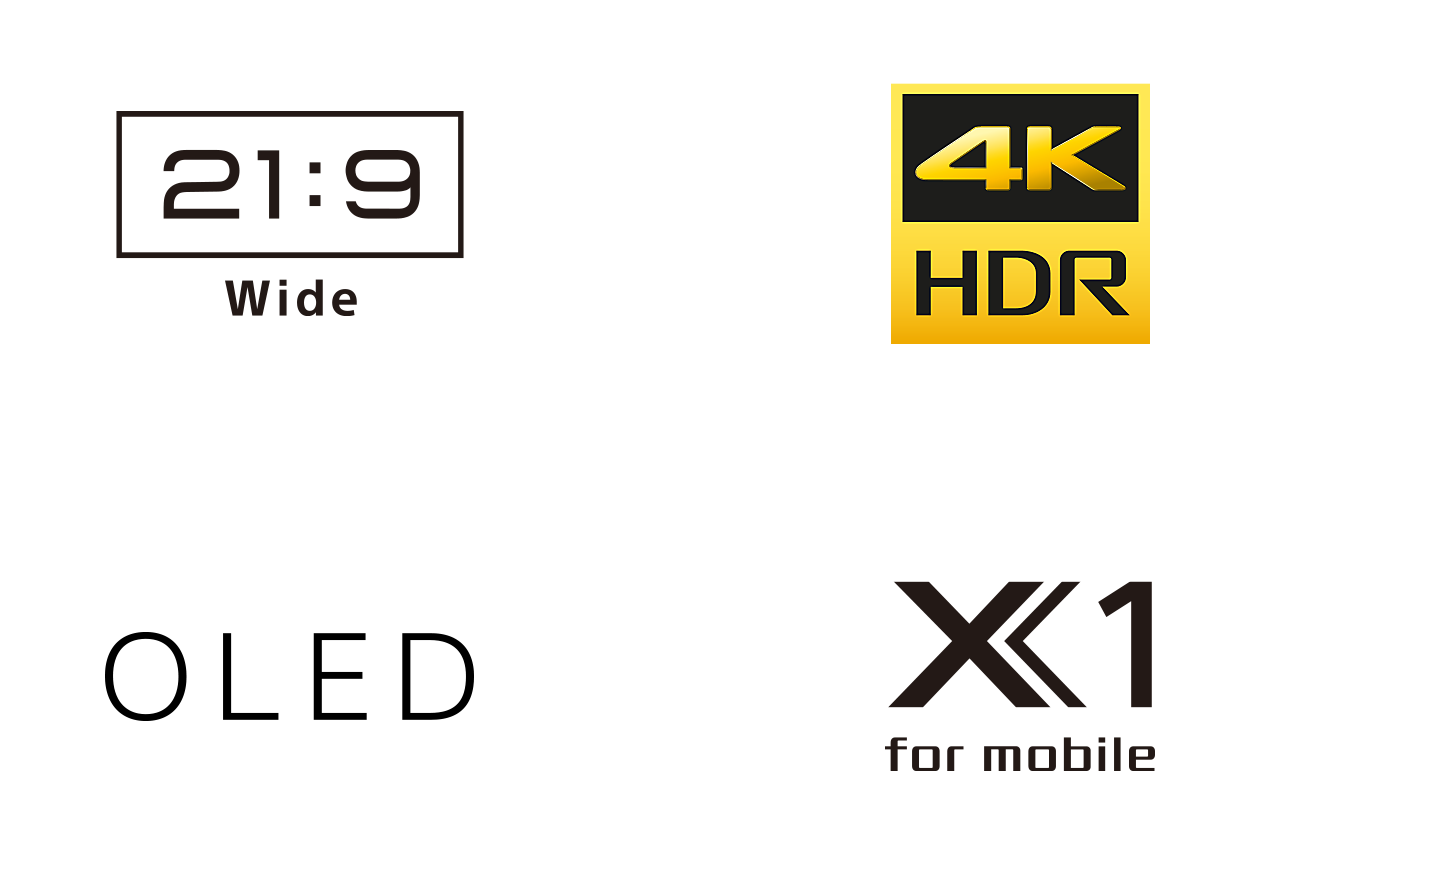 21:9-laajakuva-, 4K HDR-, OLED- ja X1 for mobile -logot